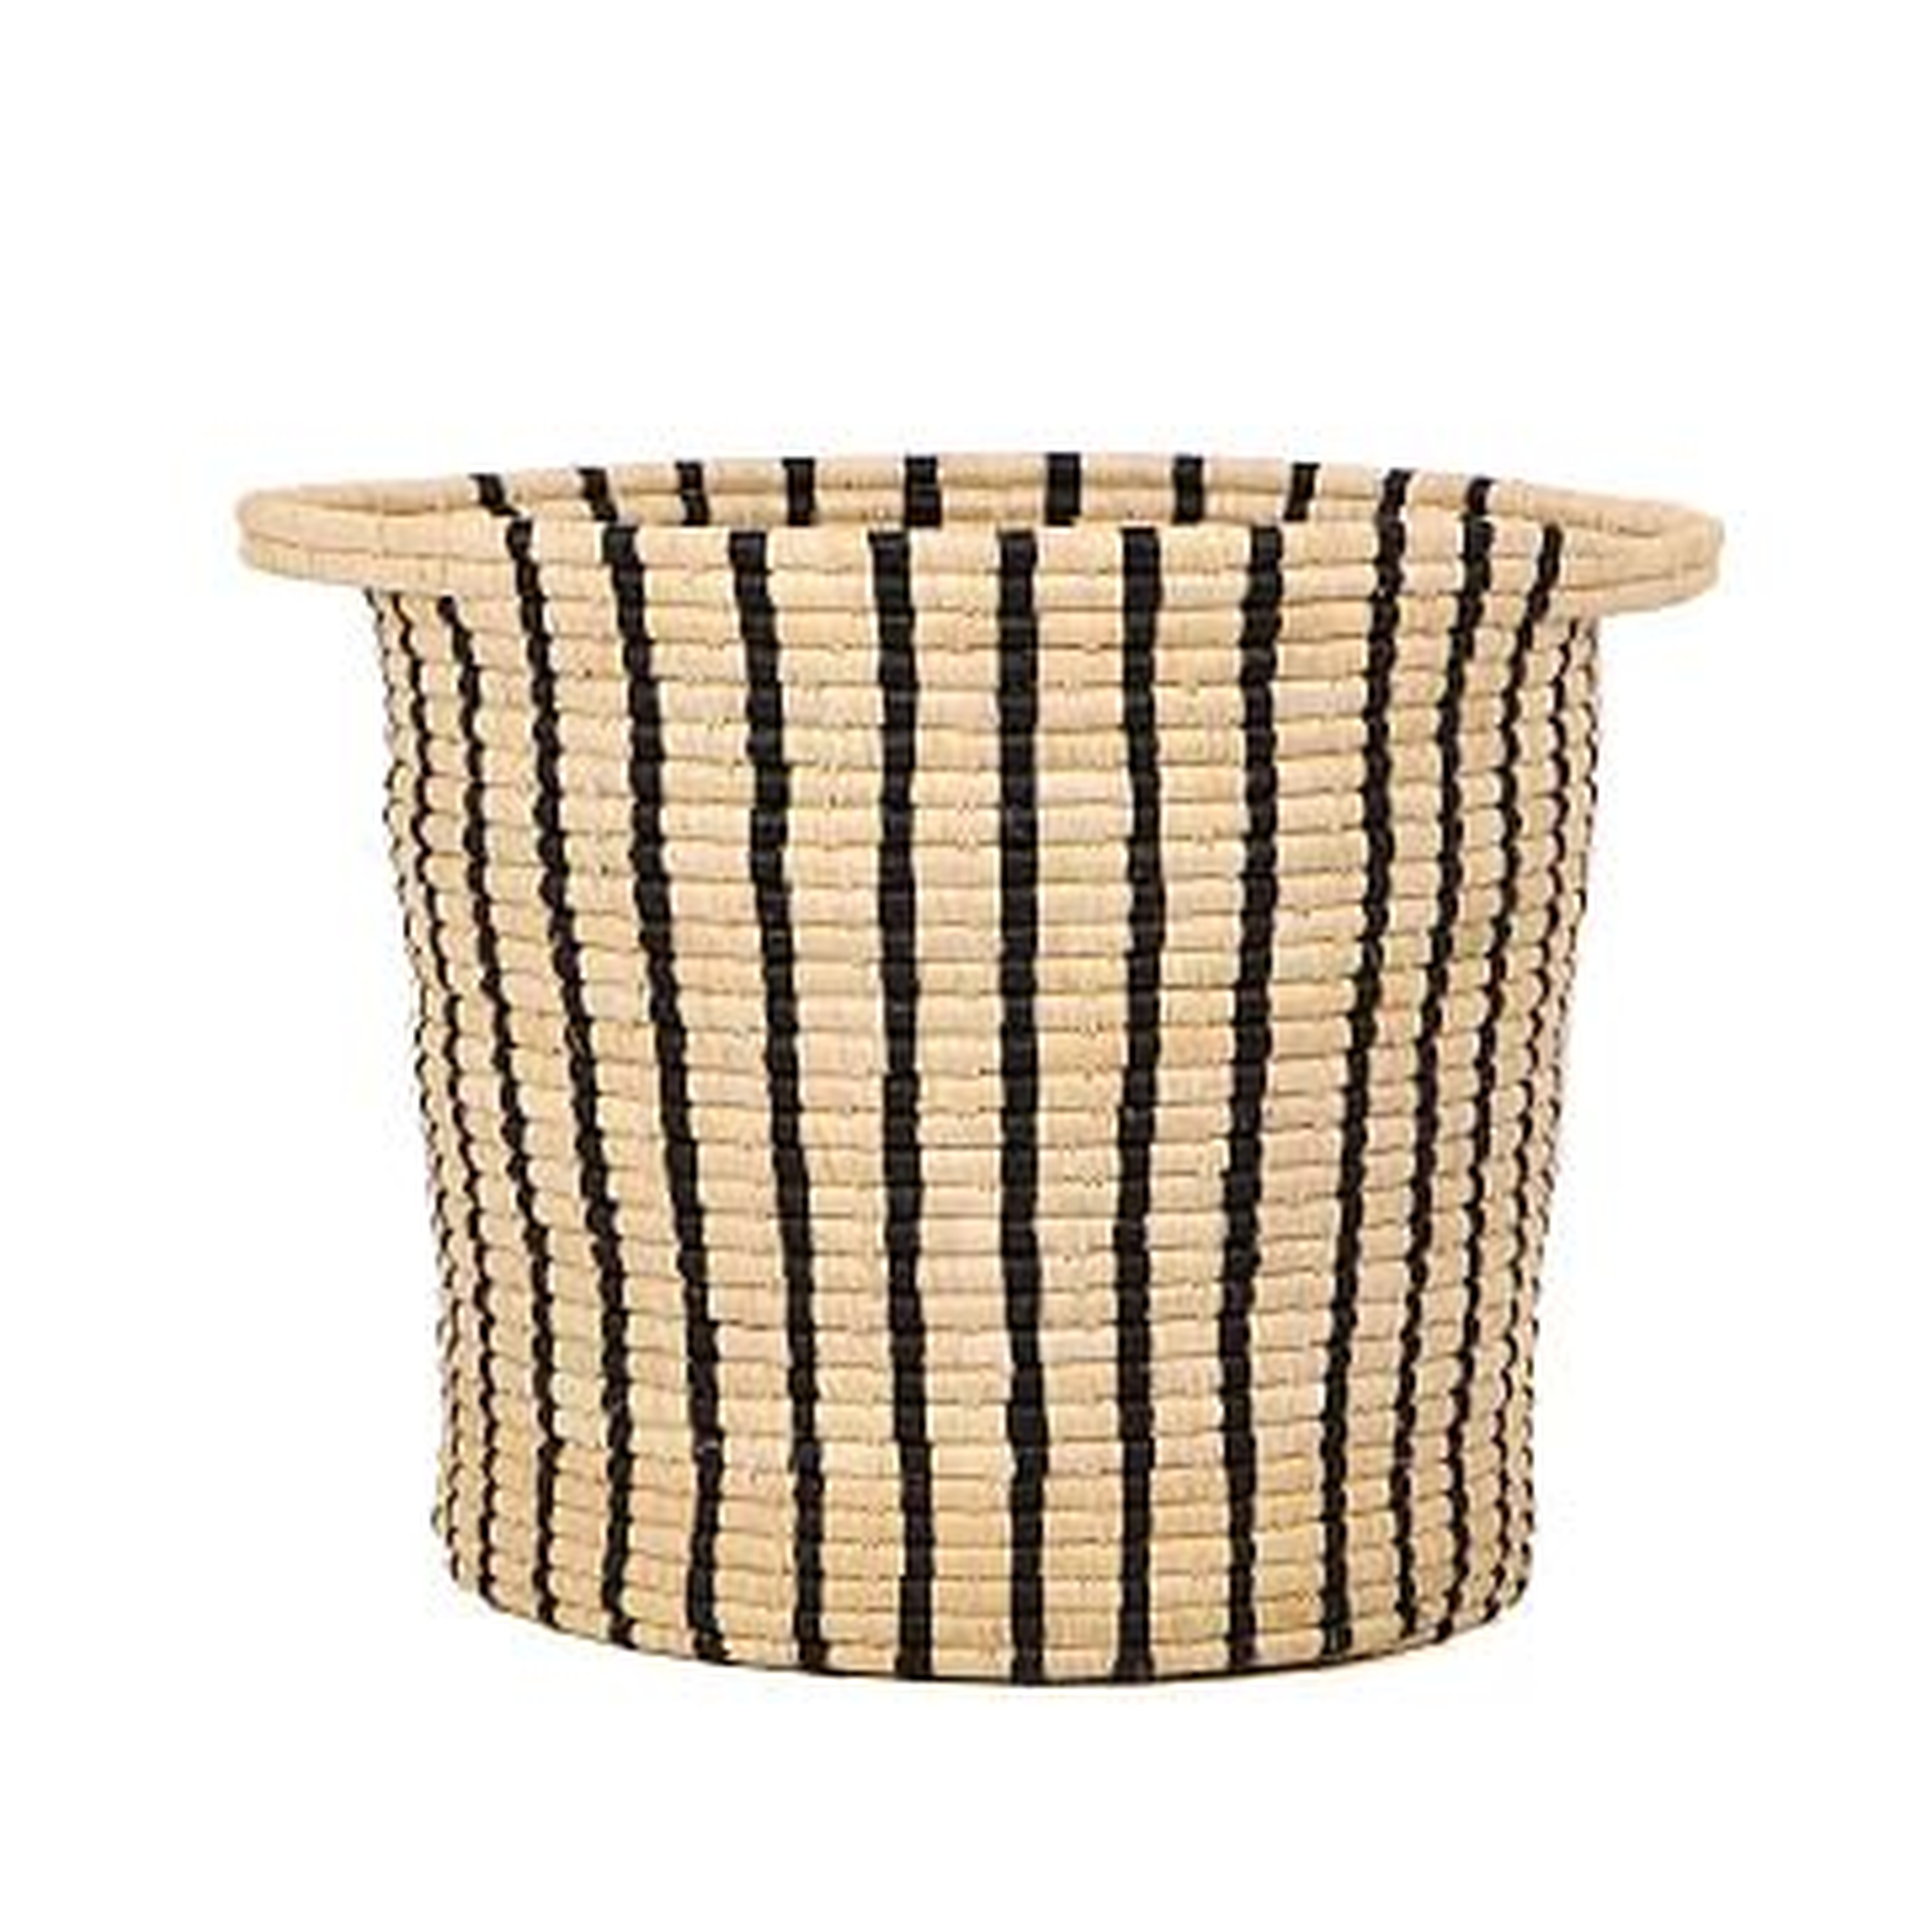 Striped Floor Basket, Black and Natural - West Elm